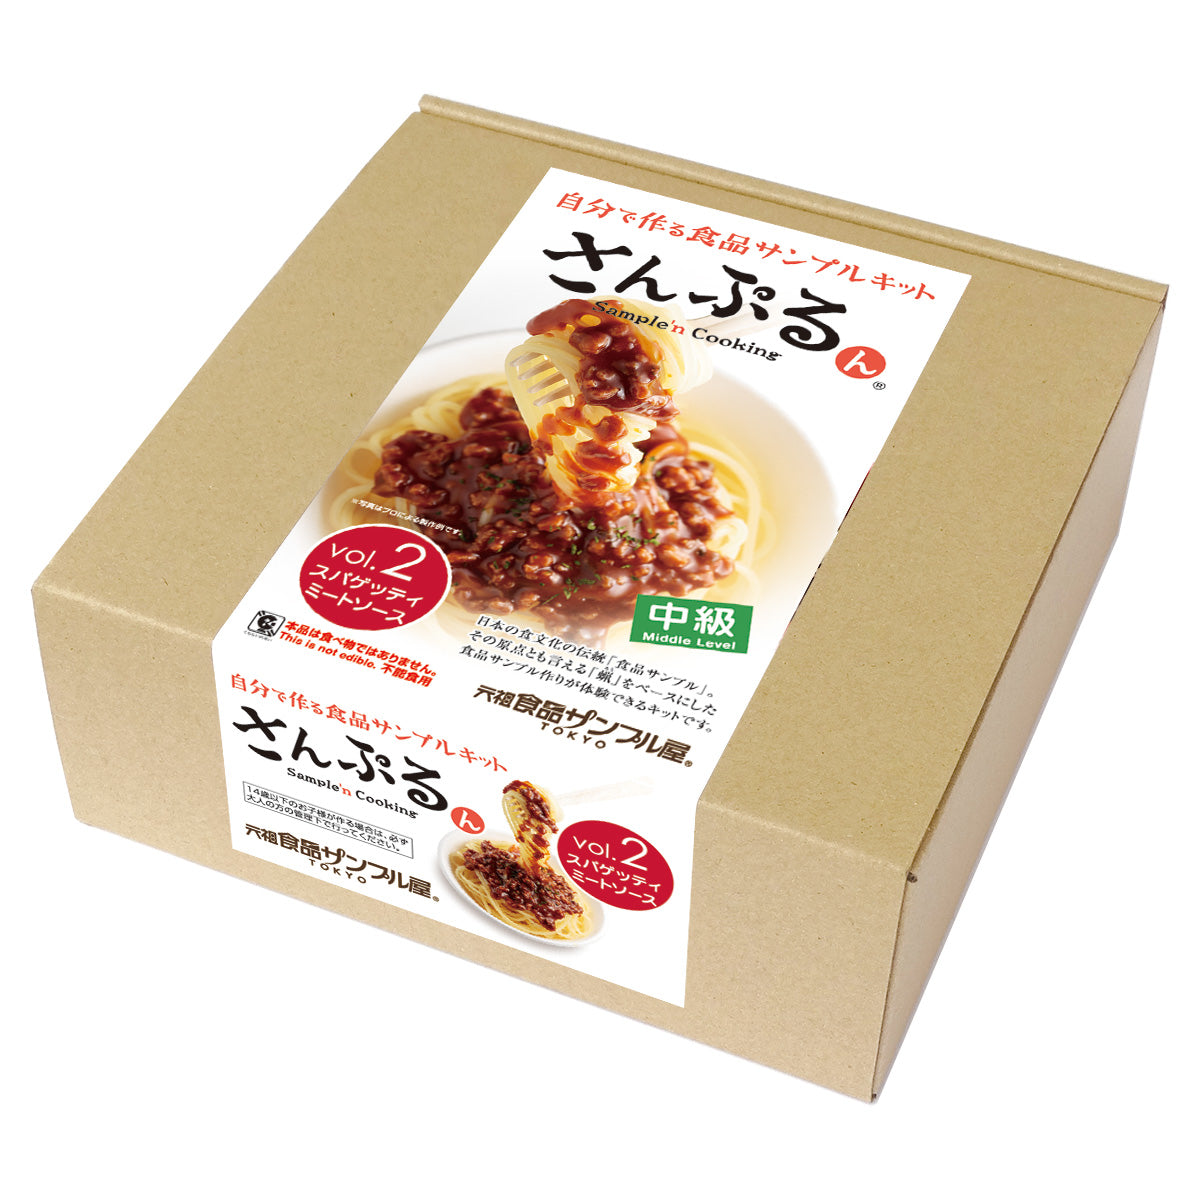 自分で作る食品サンプル製作キット｜さんぷるん Vol.2「スパゲッティ